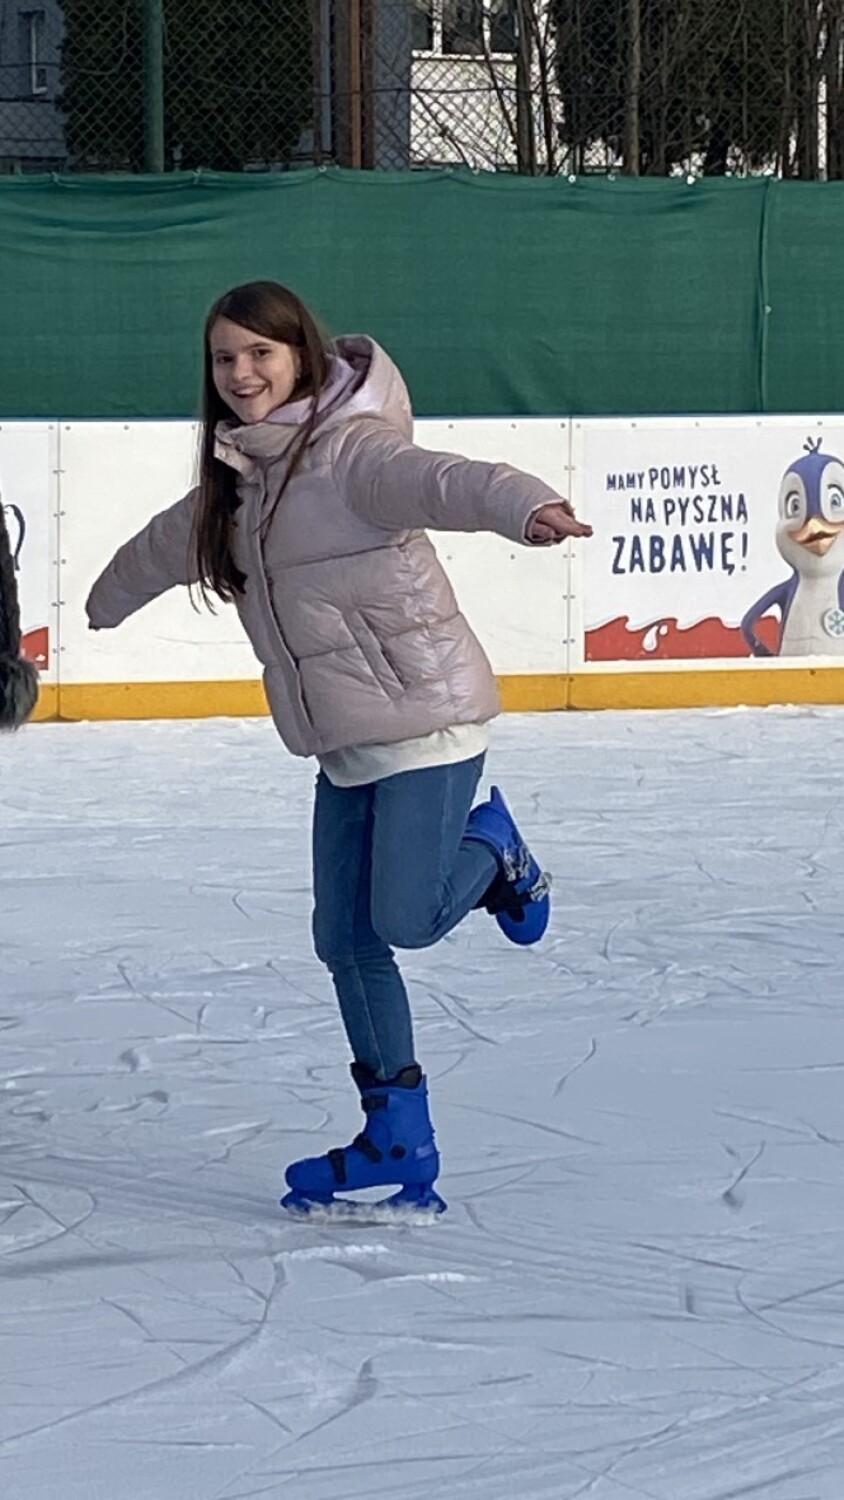 Lekcja wf uczniów PSP 4 w Radomsku na lodowisku MOSiR! ZDJĘCIA